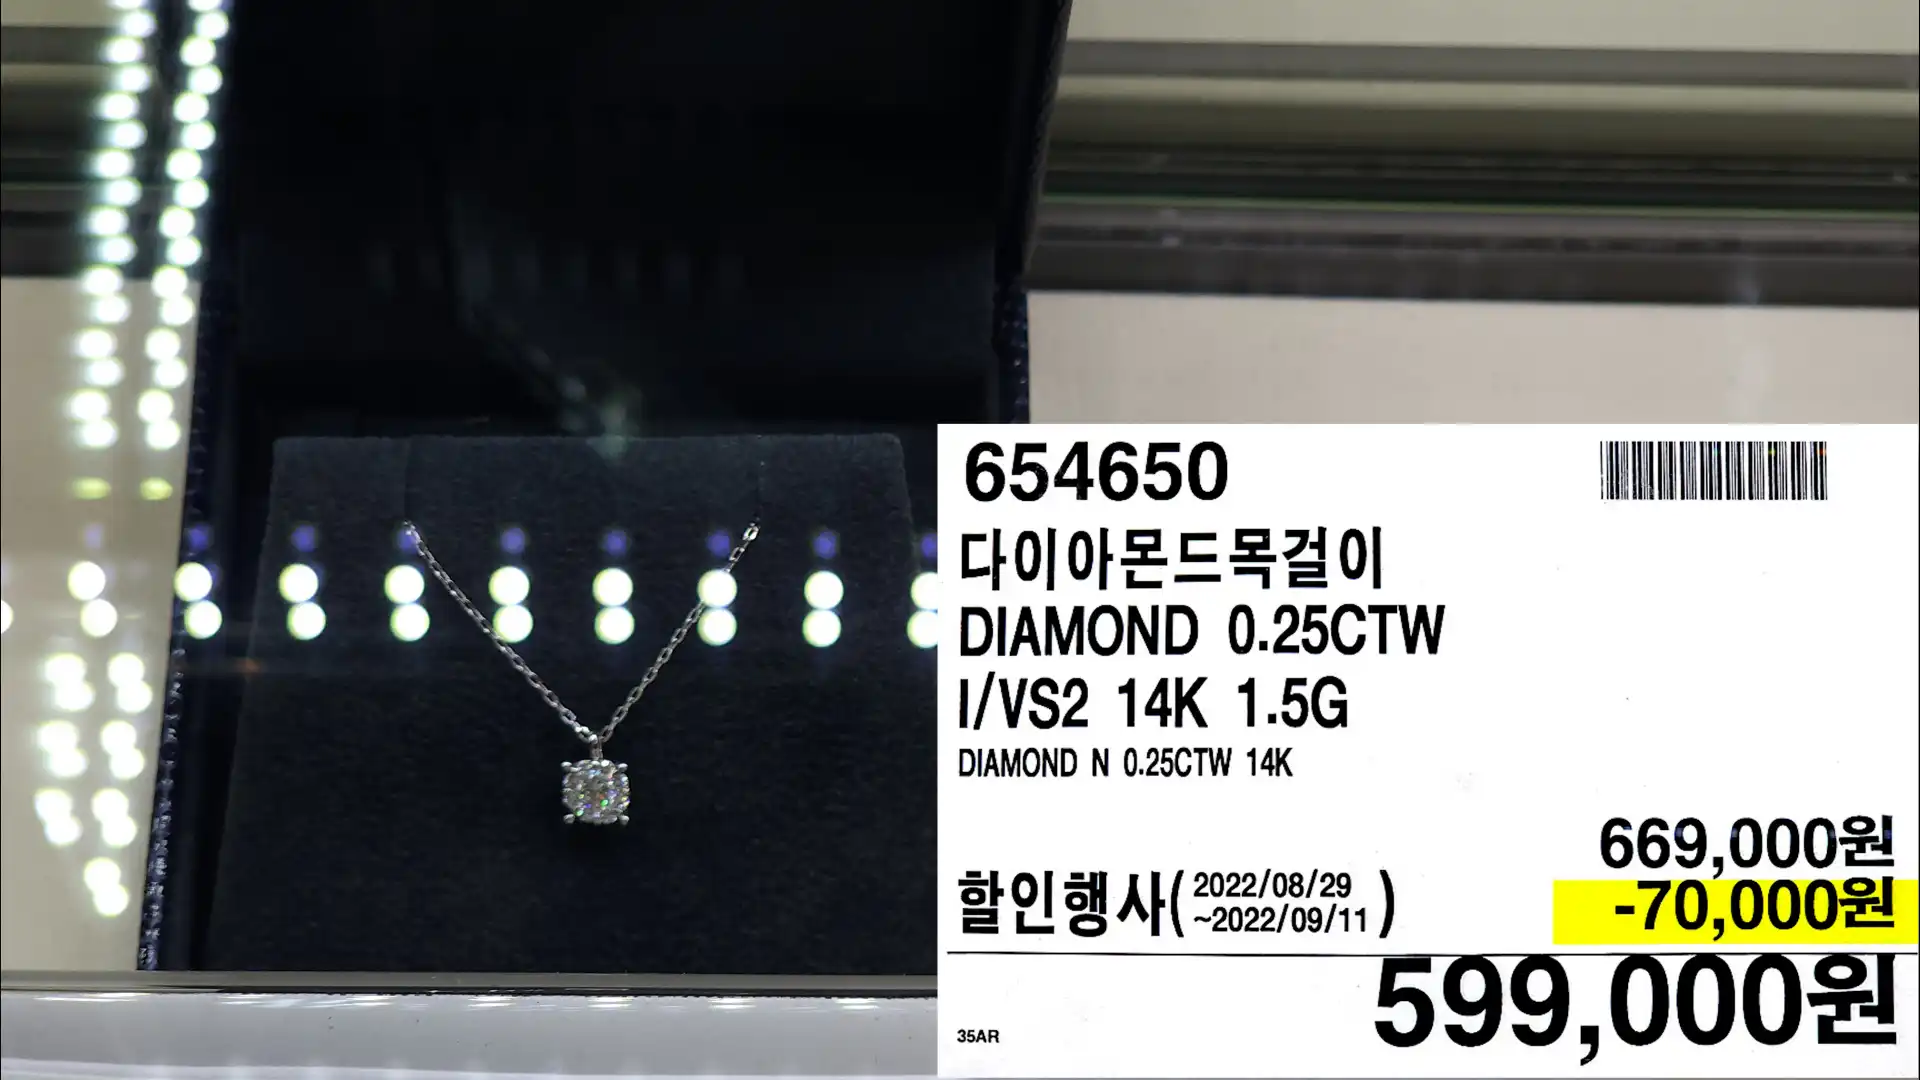 다이아몬드목걸이
DIAMOND 0.25CTW
I/VS2 14K 1.5G
DIAMOND N 0.25CTW 14K
599,000원